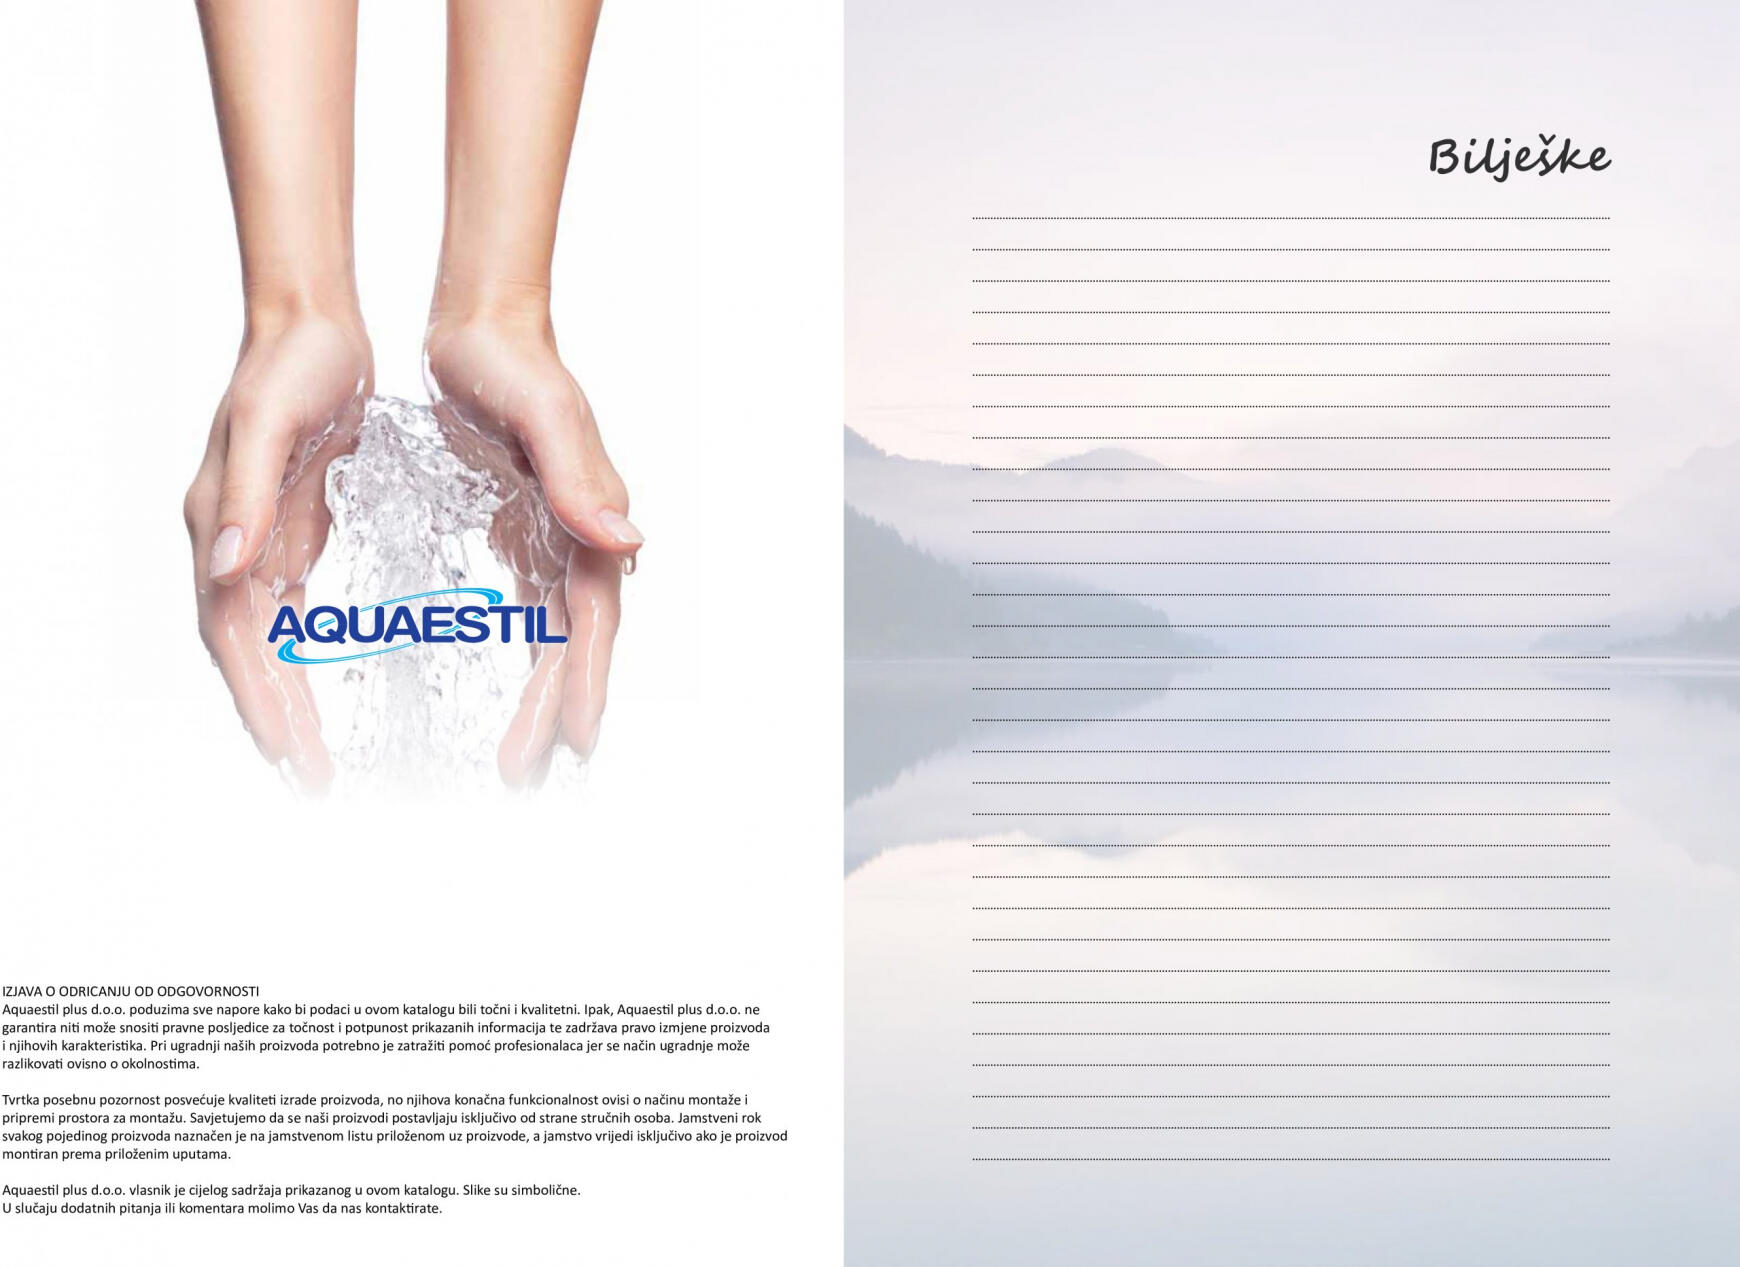 aquaestil - Aquaestil katalog od srijede 22.02. - page: 35